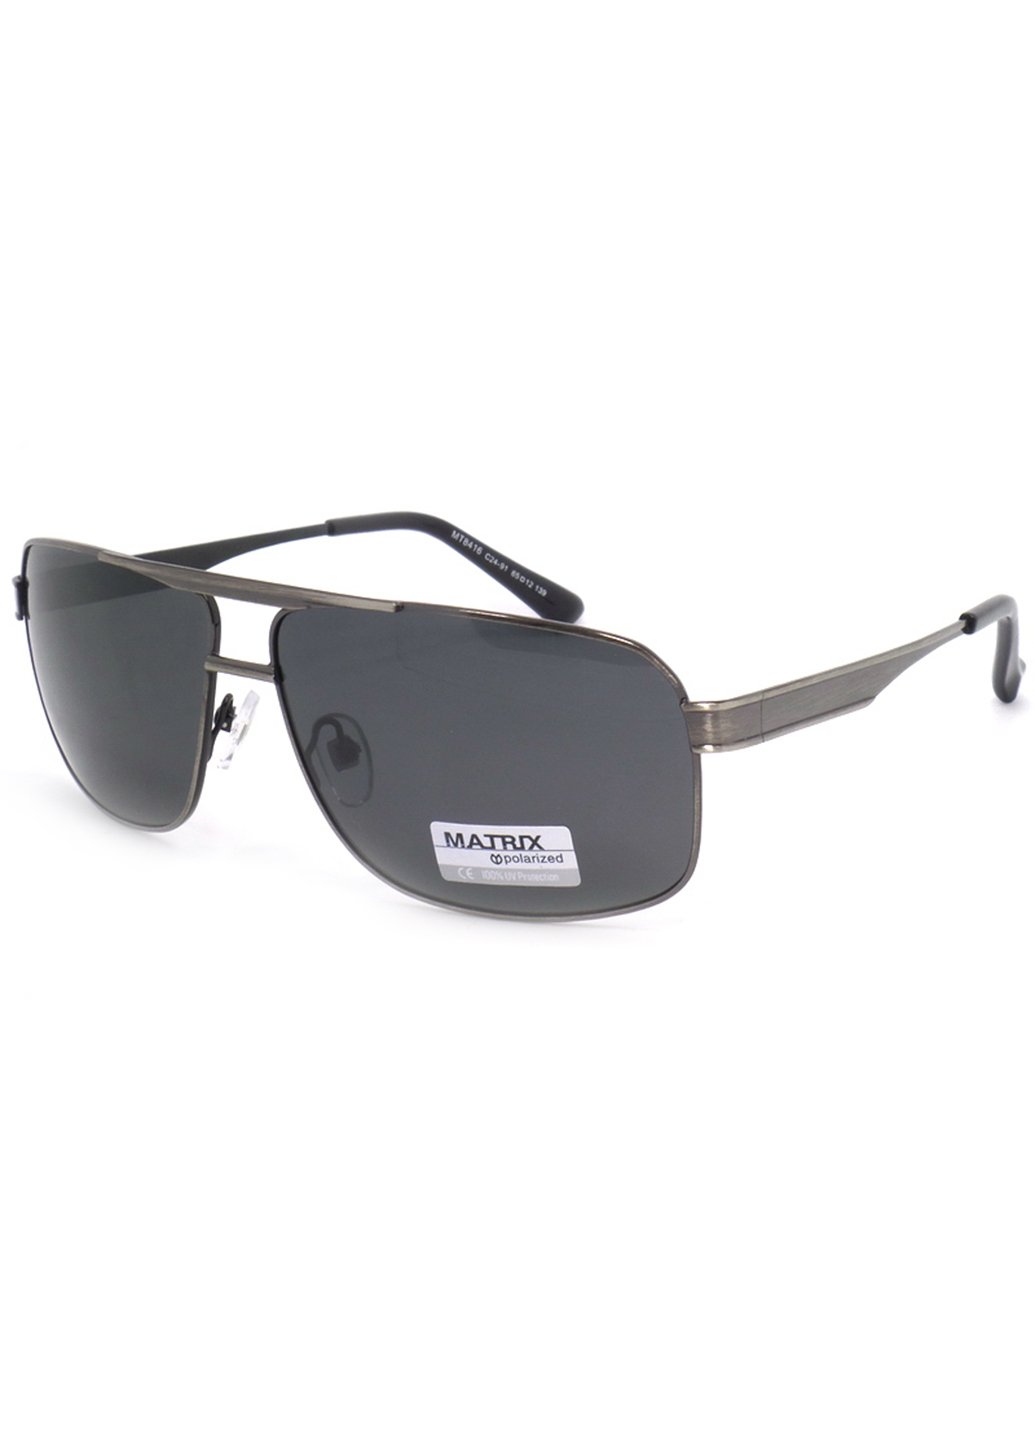 Купить Черные мужские солнцезащитные очки Matrix с поляризацией MT8416 111017 в интернет-магазине